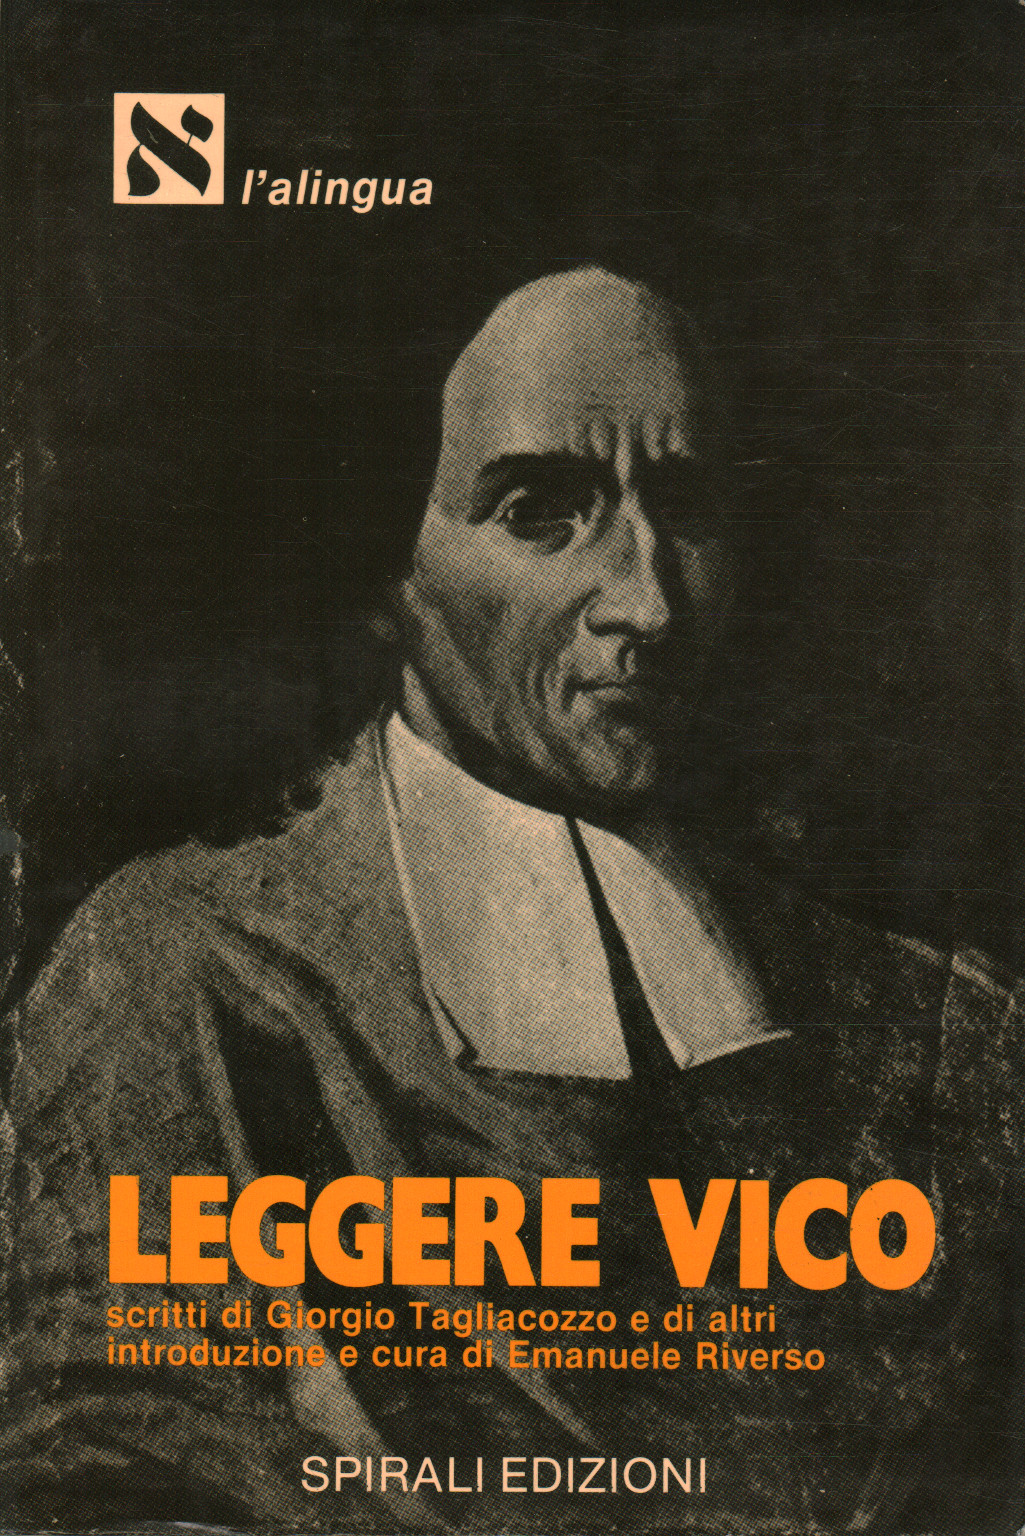 Leer Vico, Emanuele Riverso